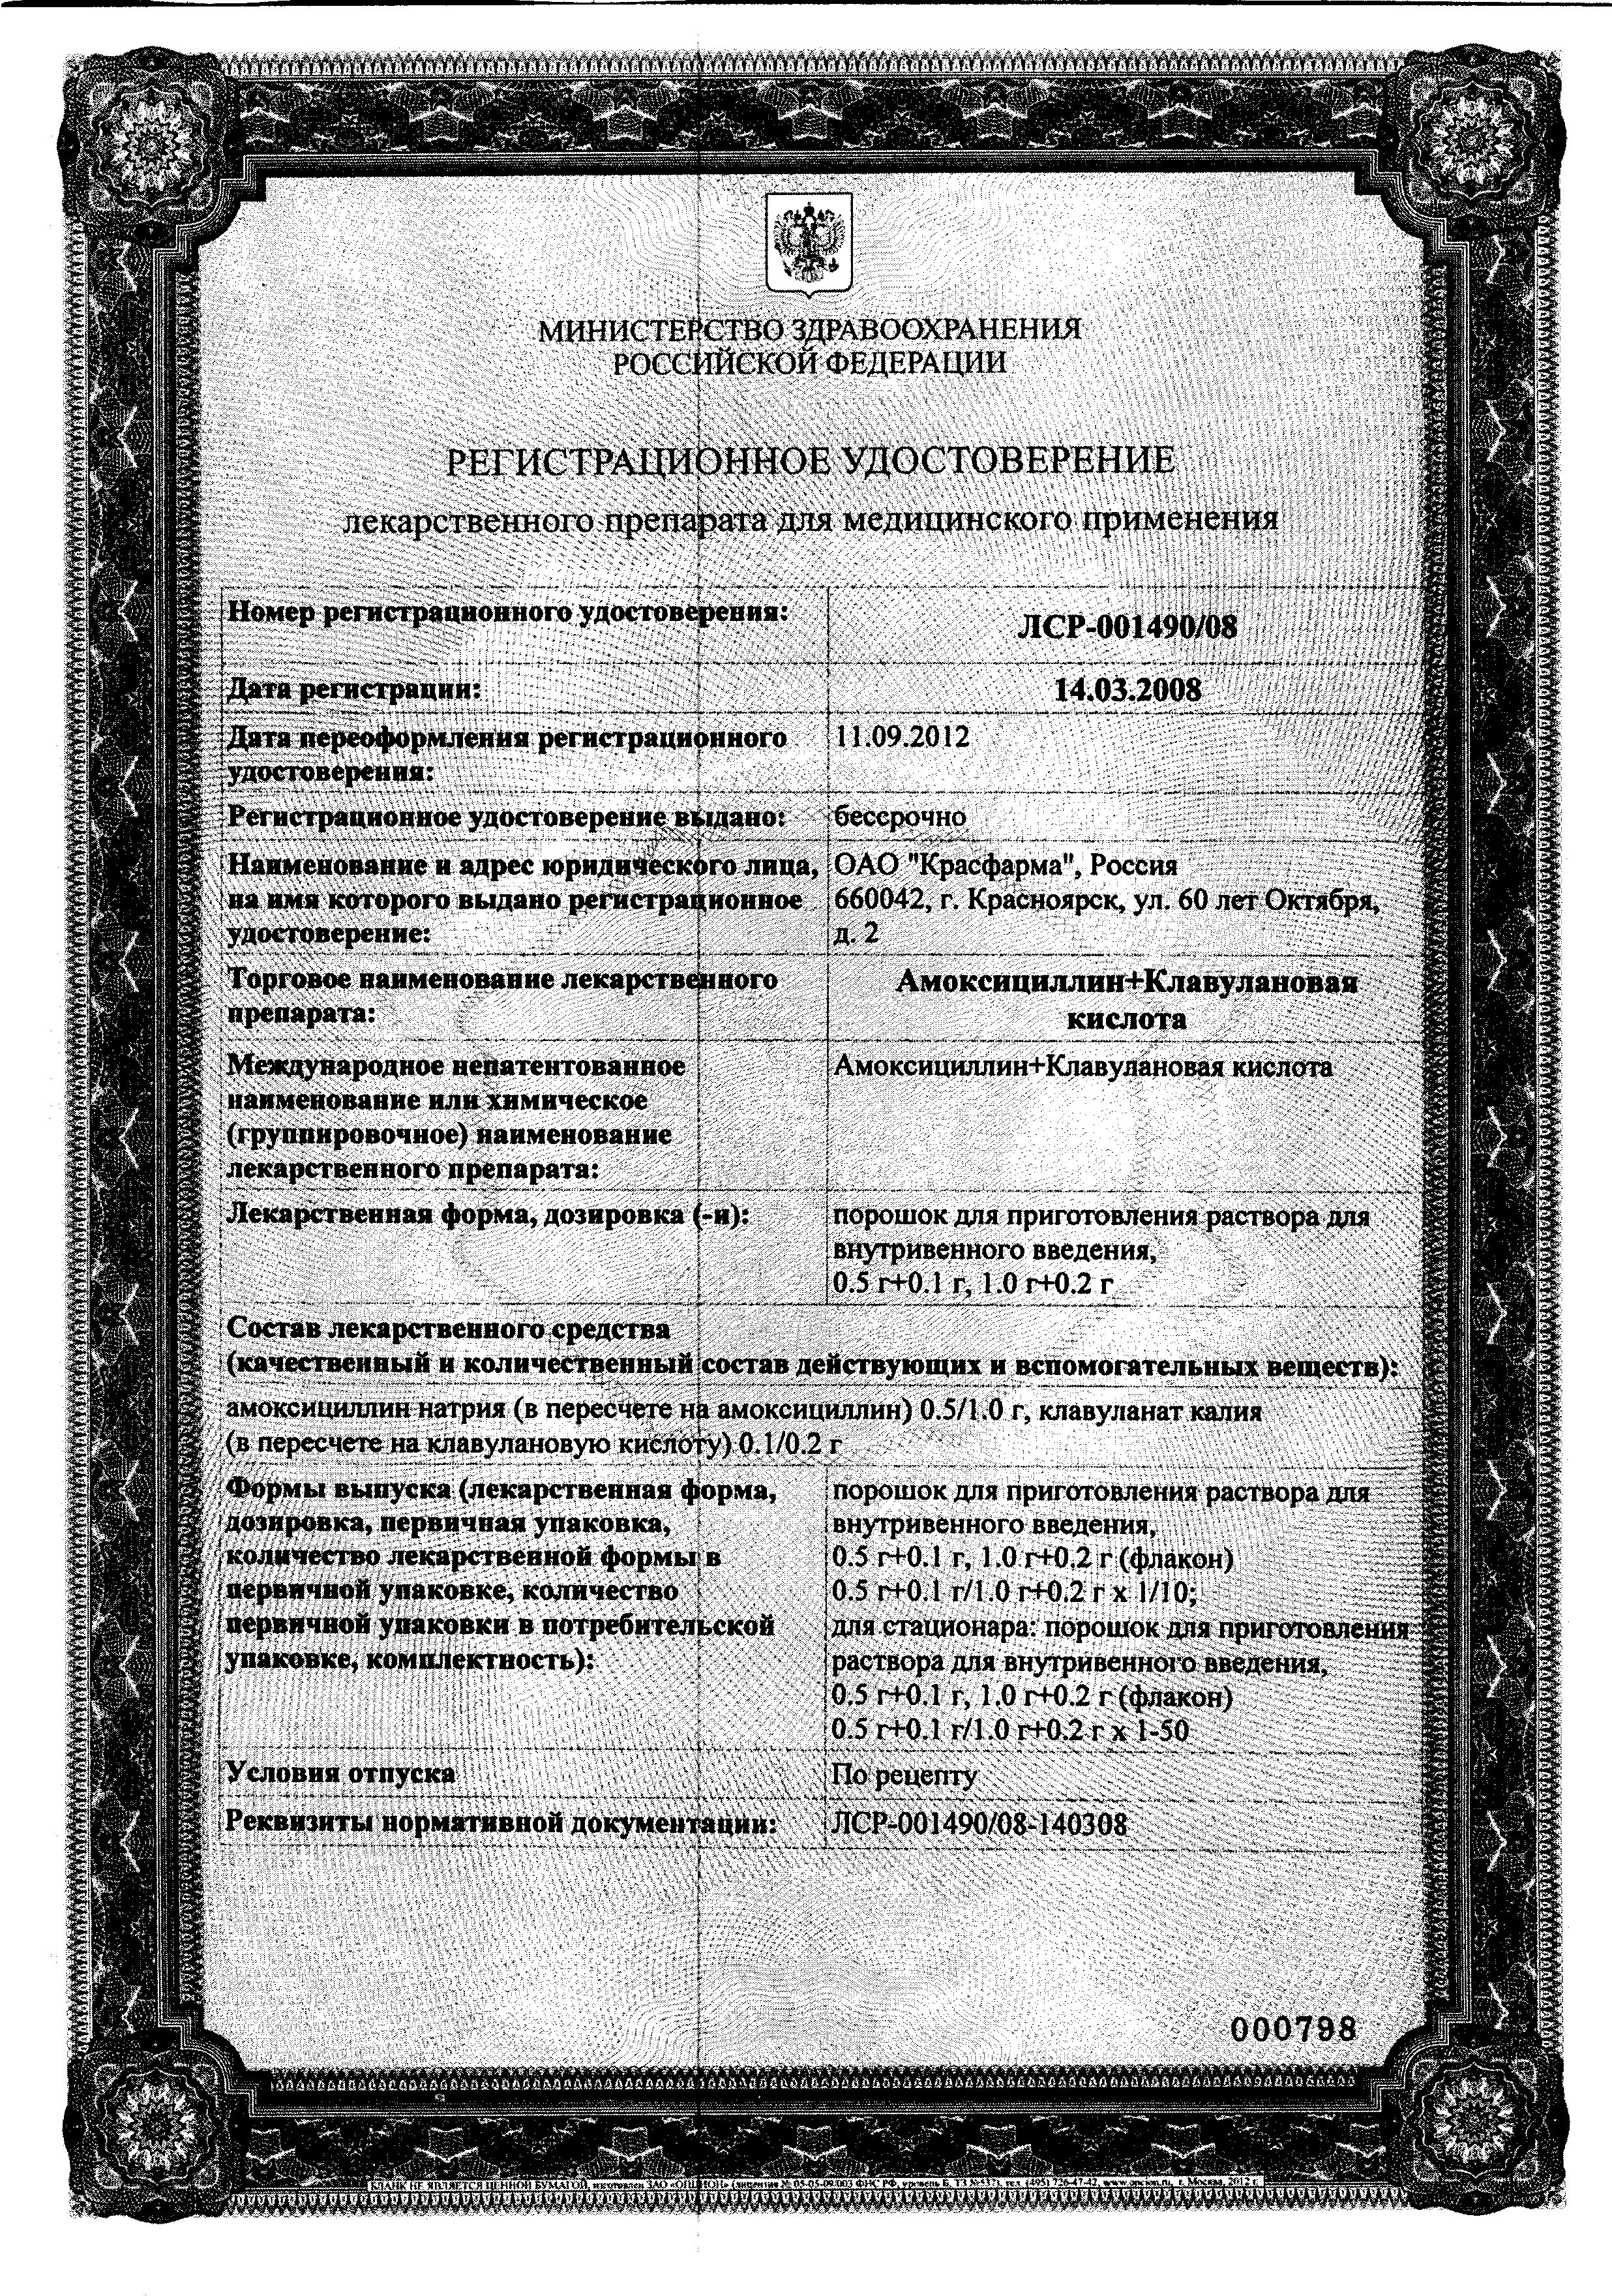 Амоксициллин+Клавулановая кислота сертификат